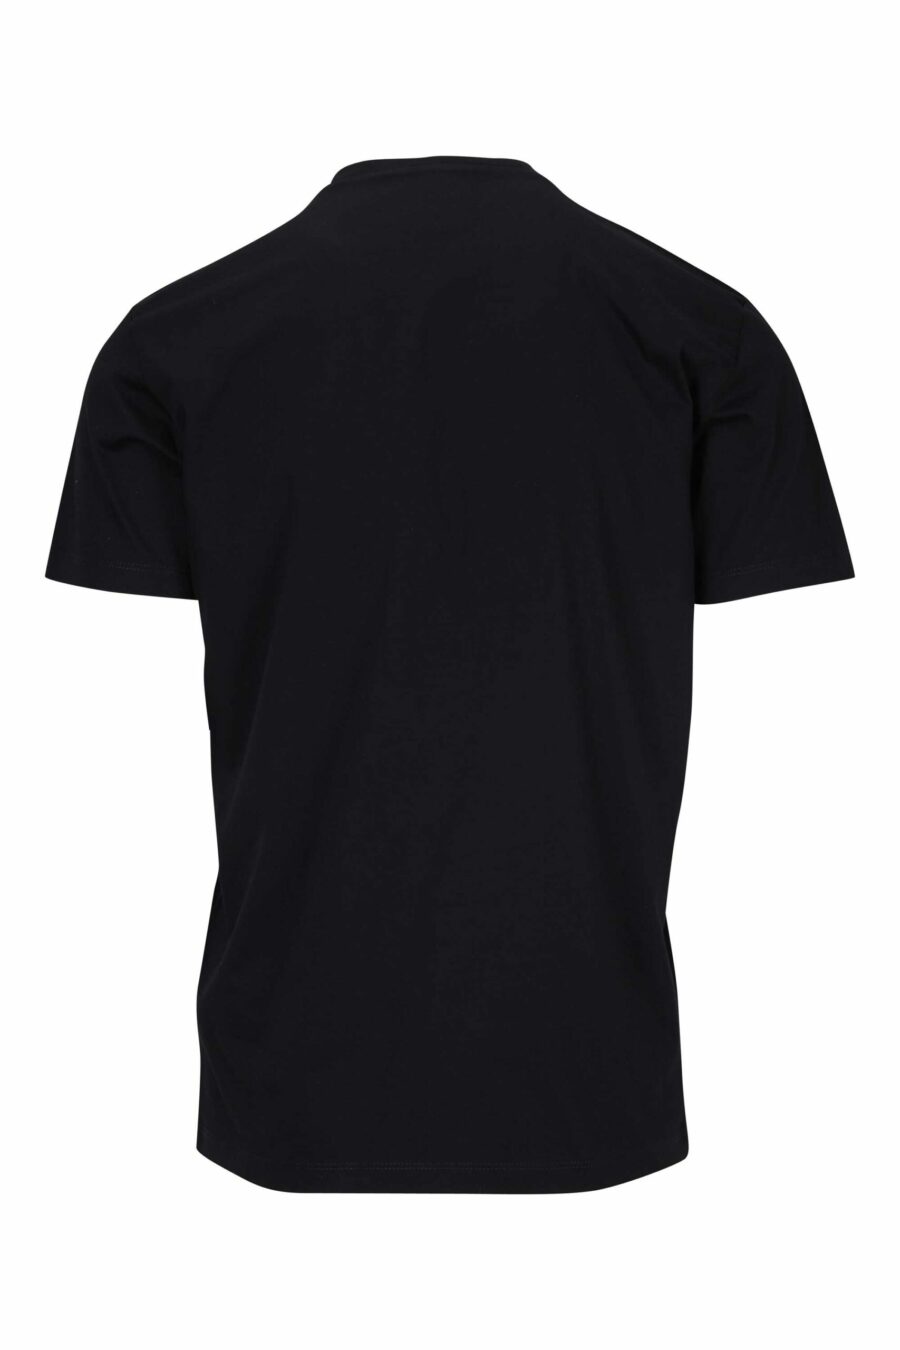 T-shirt noir avec logo "icon" plié - 8054148400989 1 à l'échelle